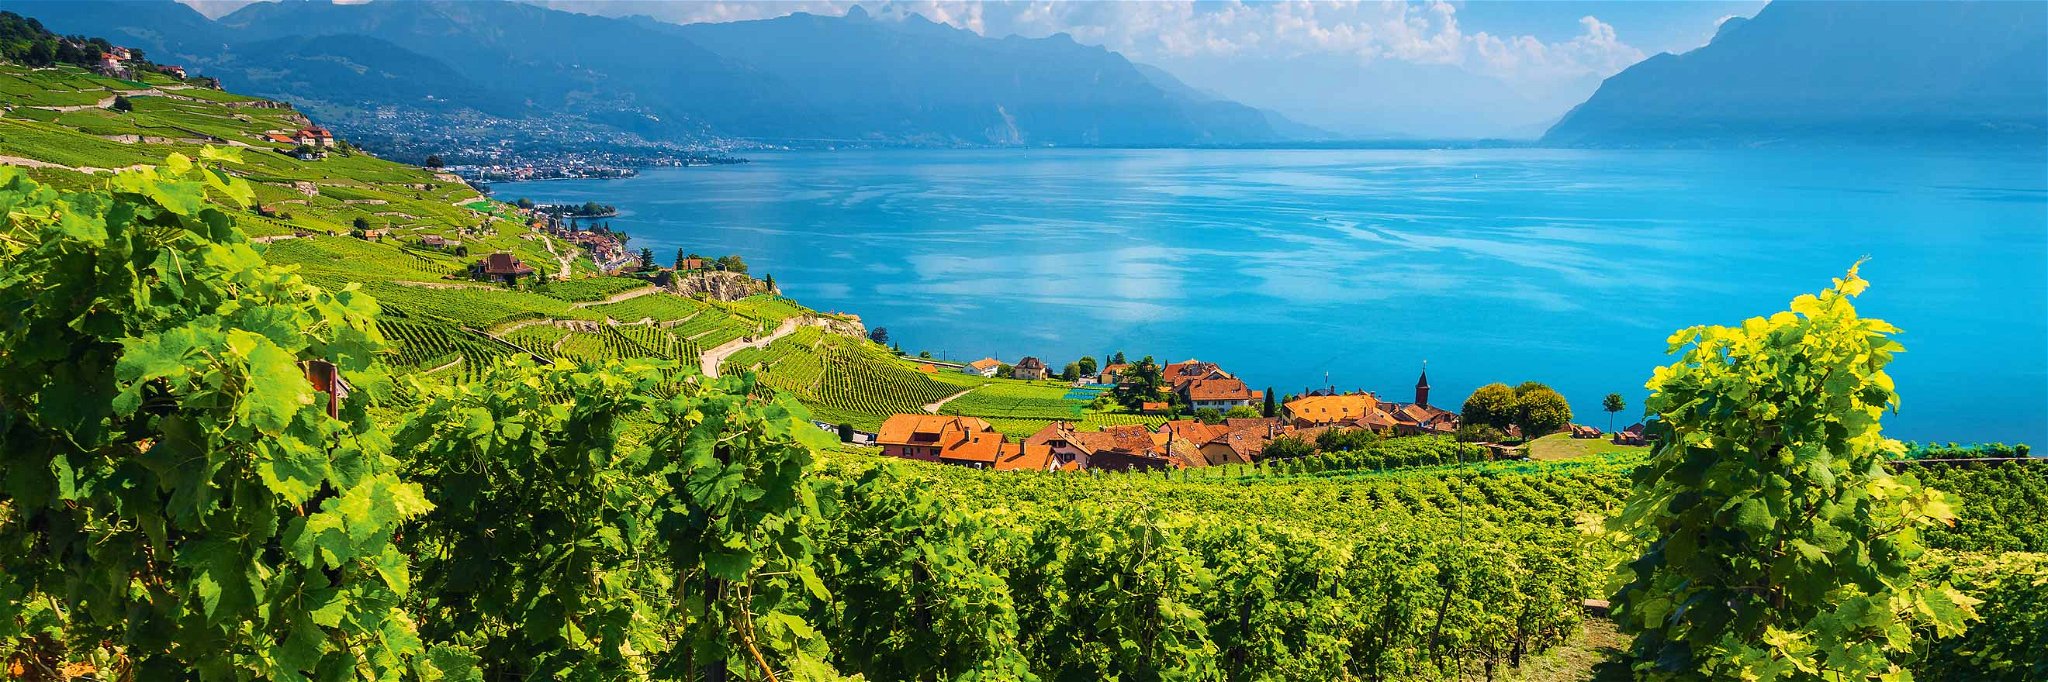 Das Weingebiet Lavaux am Genfersee gehört seit 2007 zum Unesco-Weltkulturerbe.